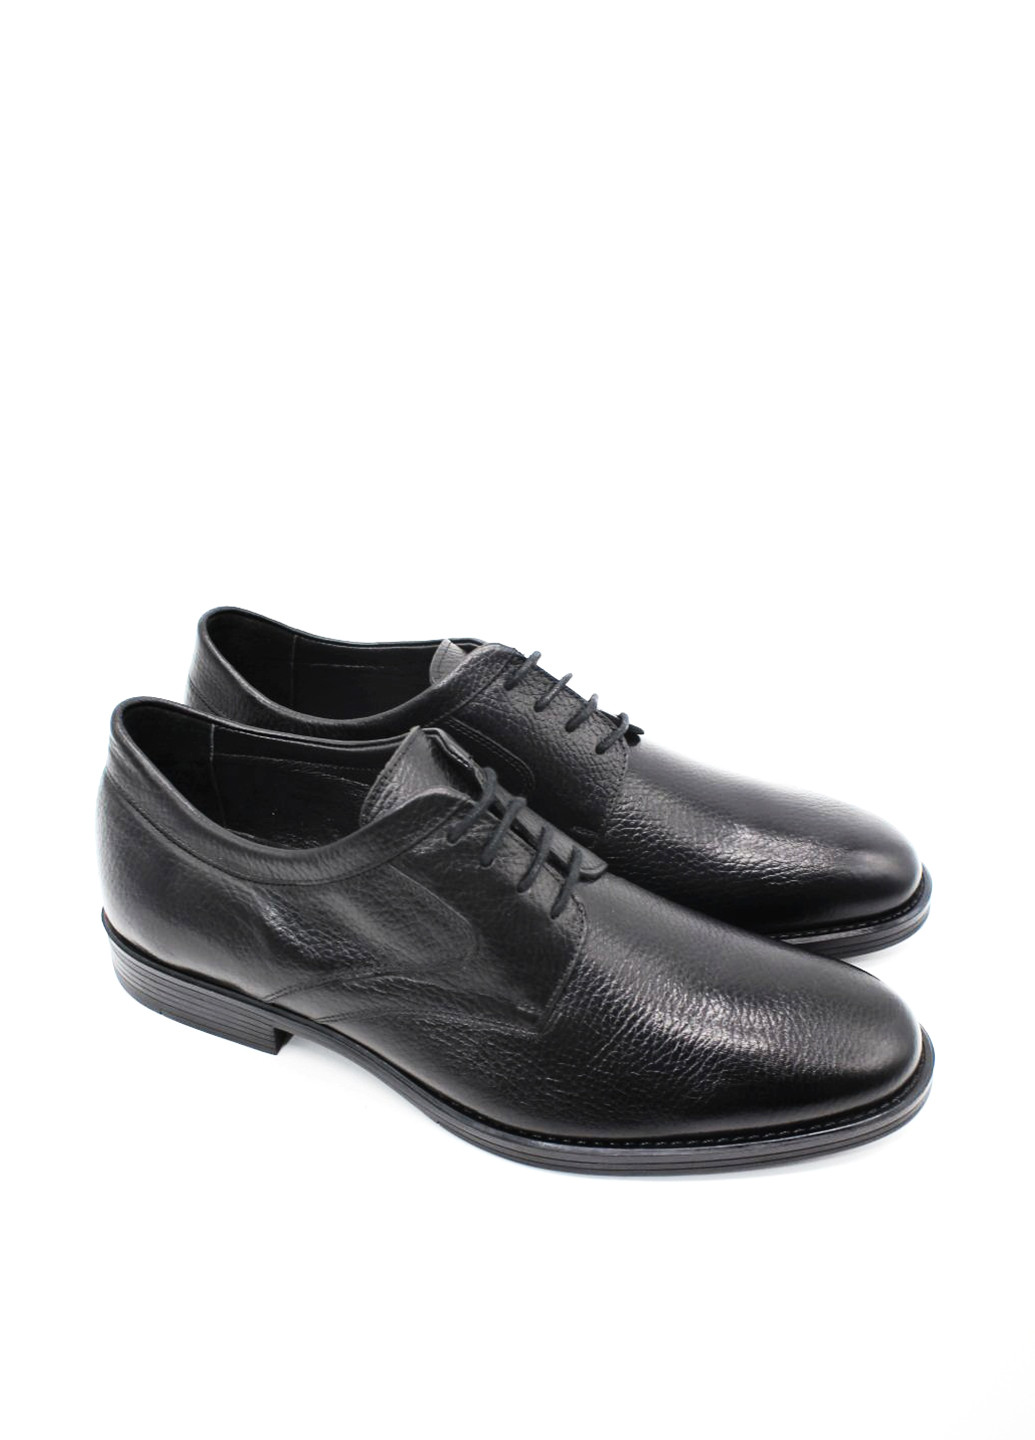 Черные классические туфли Luciano Bellini на шнурках